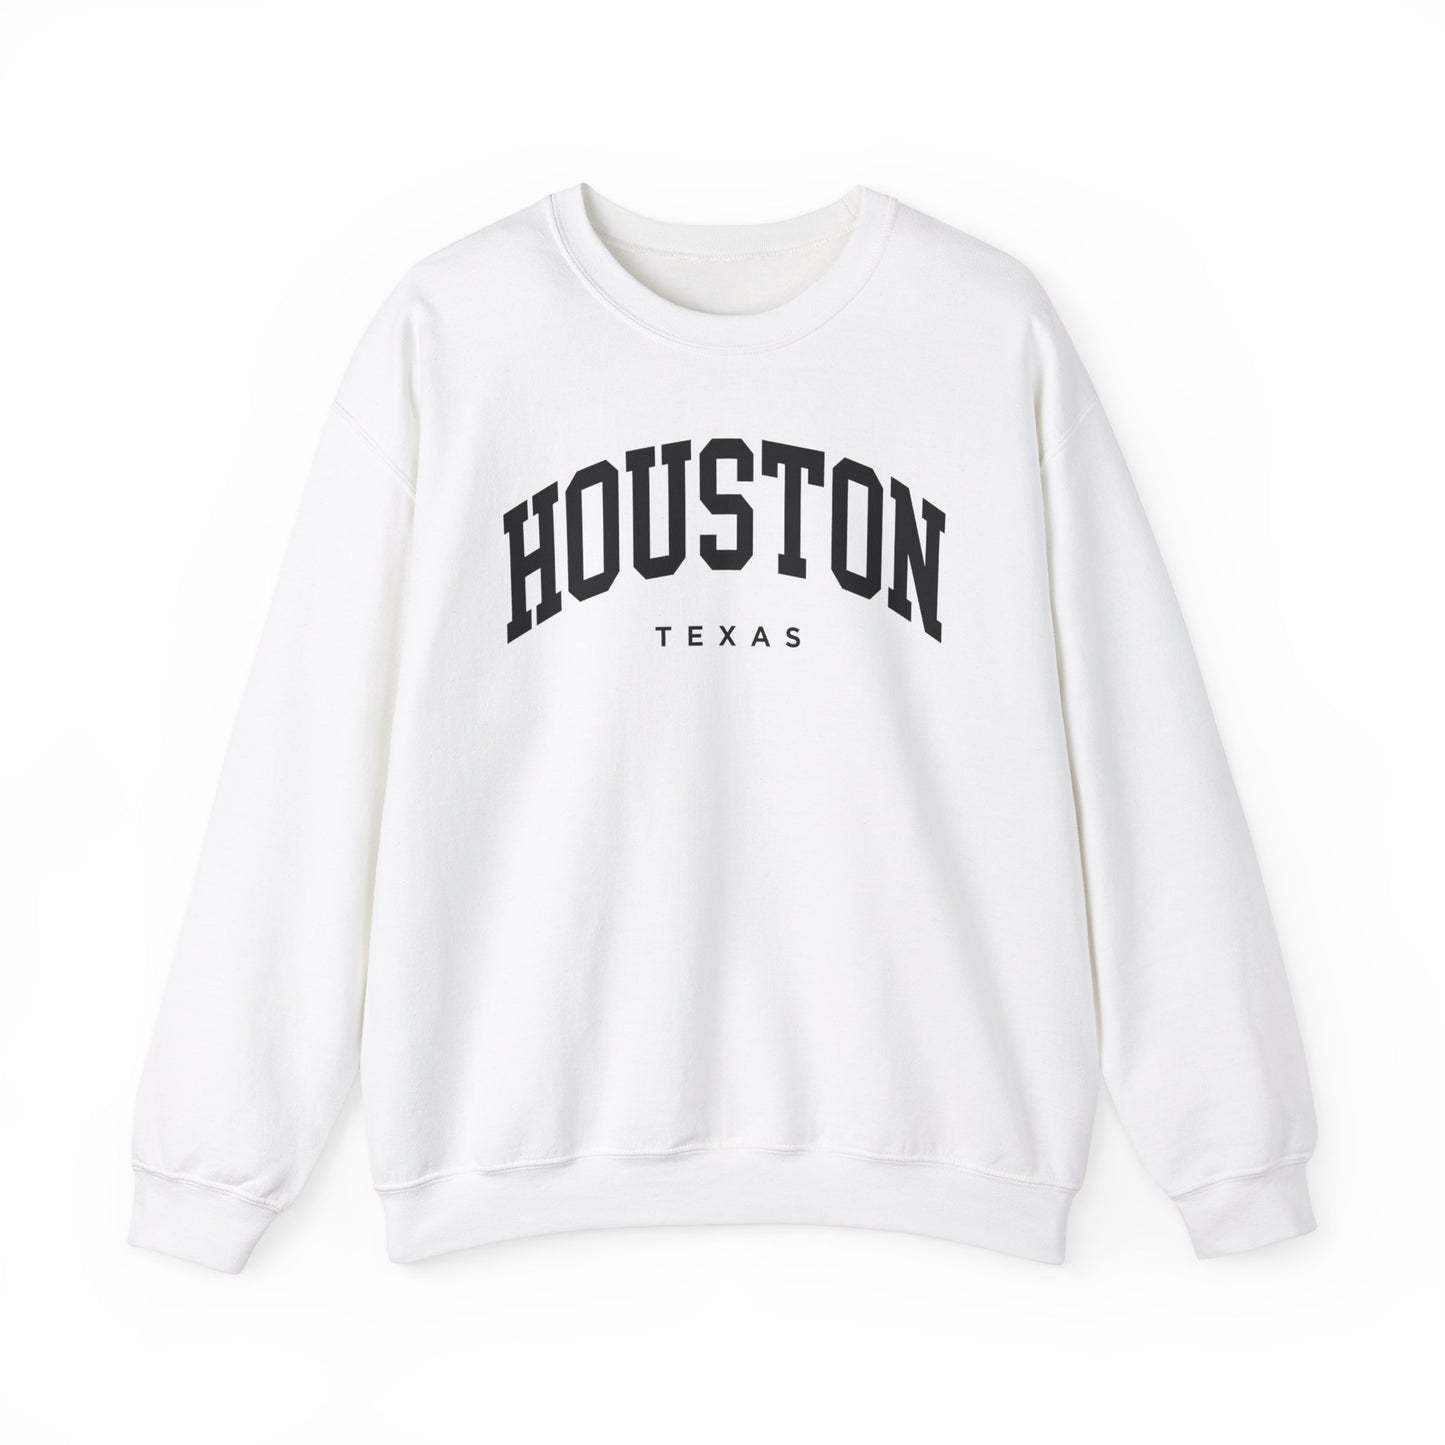 Houston Texas Sweatshirt